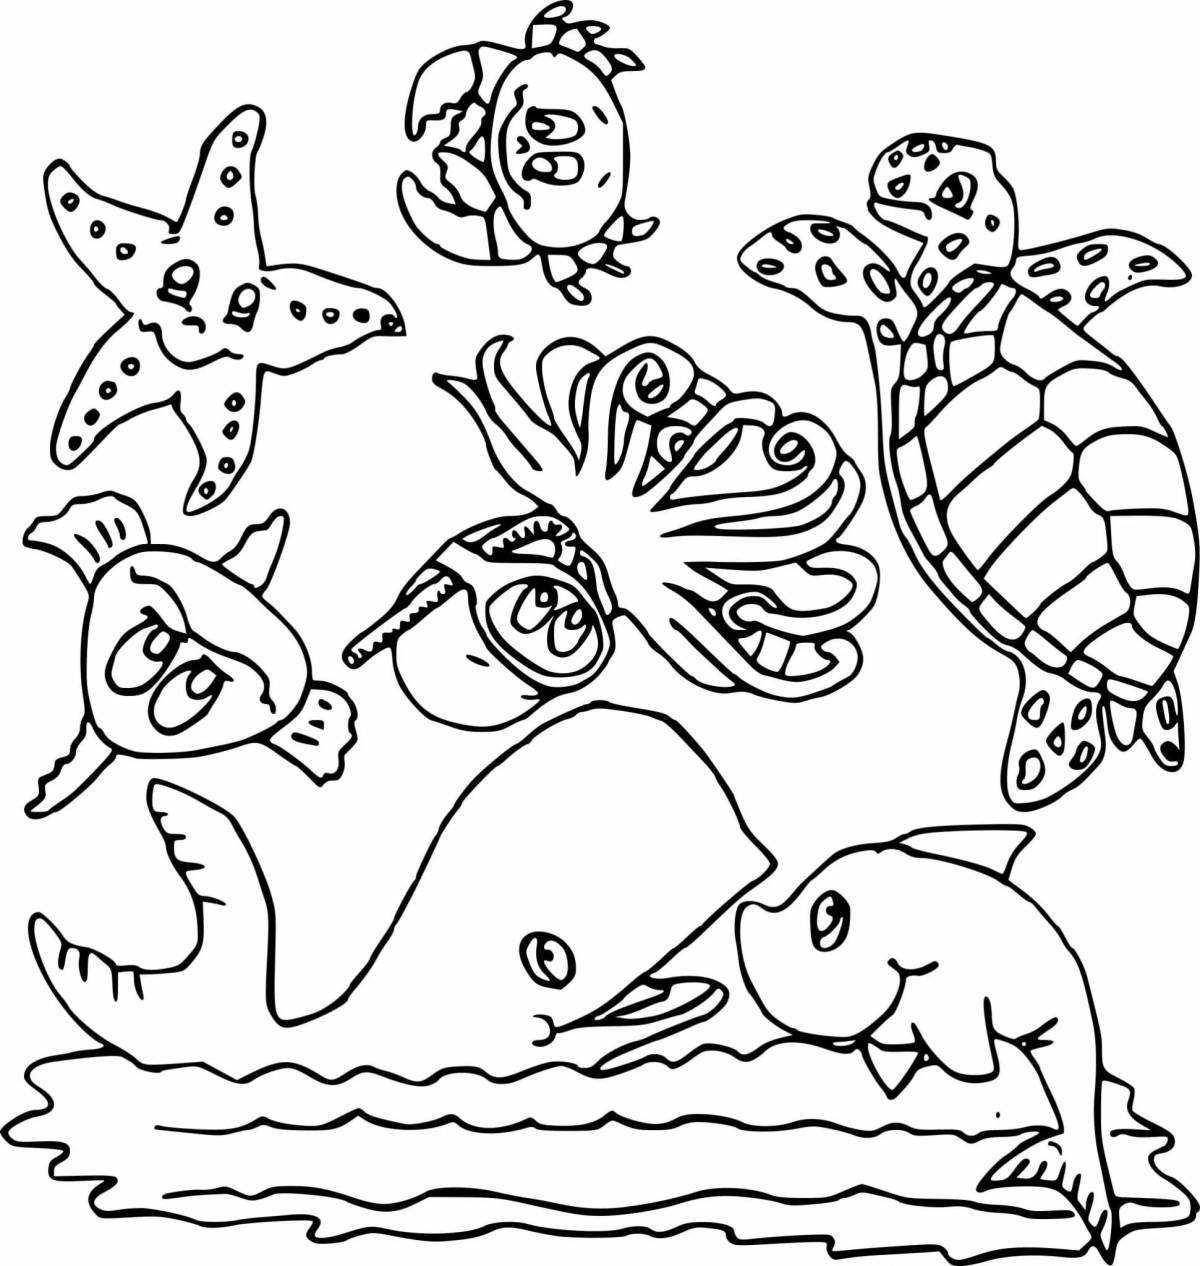 Mysterious aquatic life coloring book